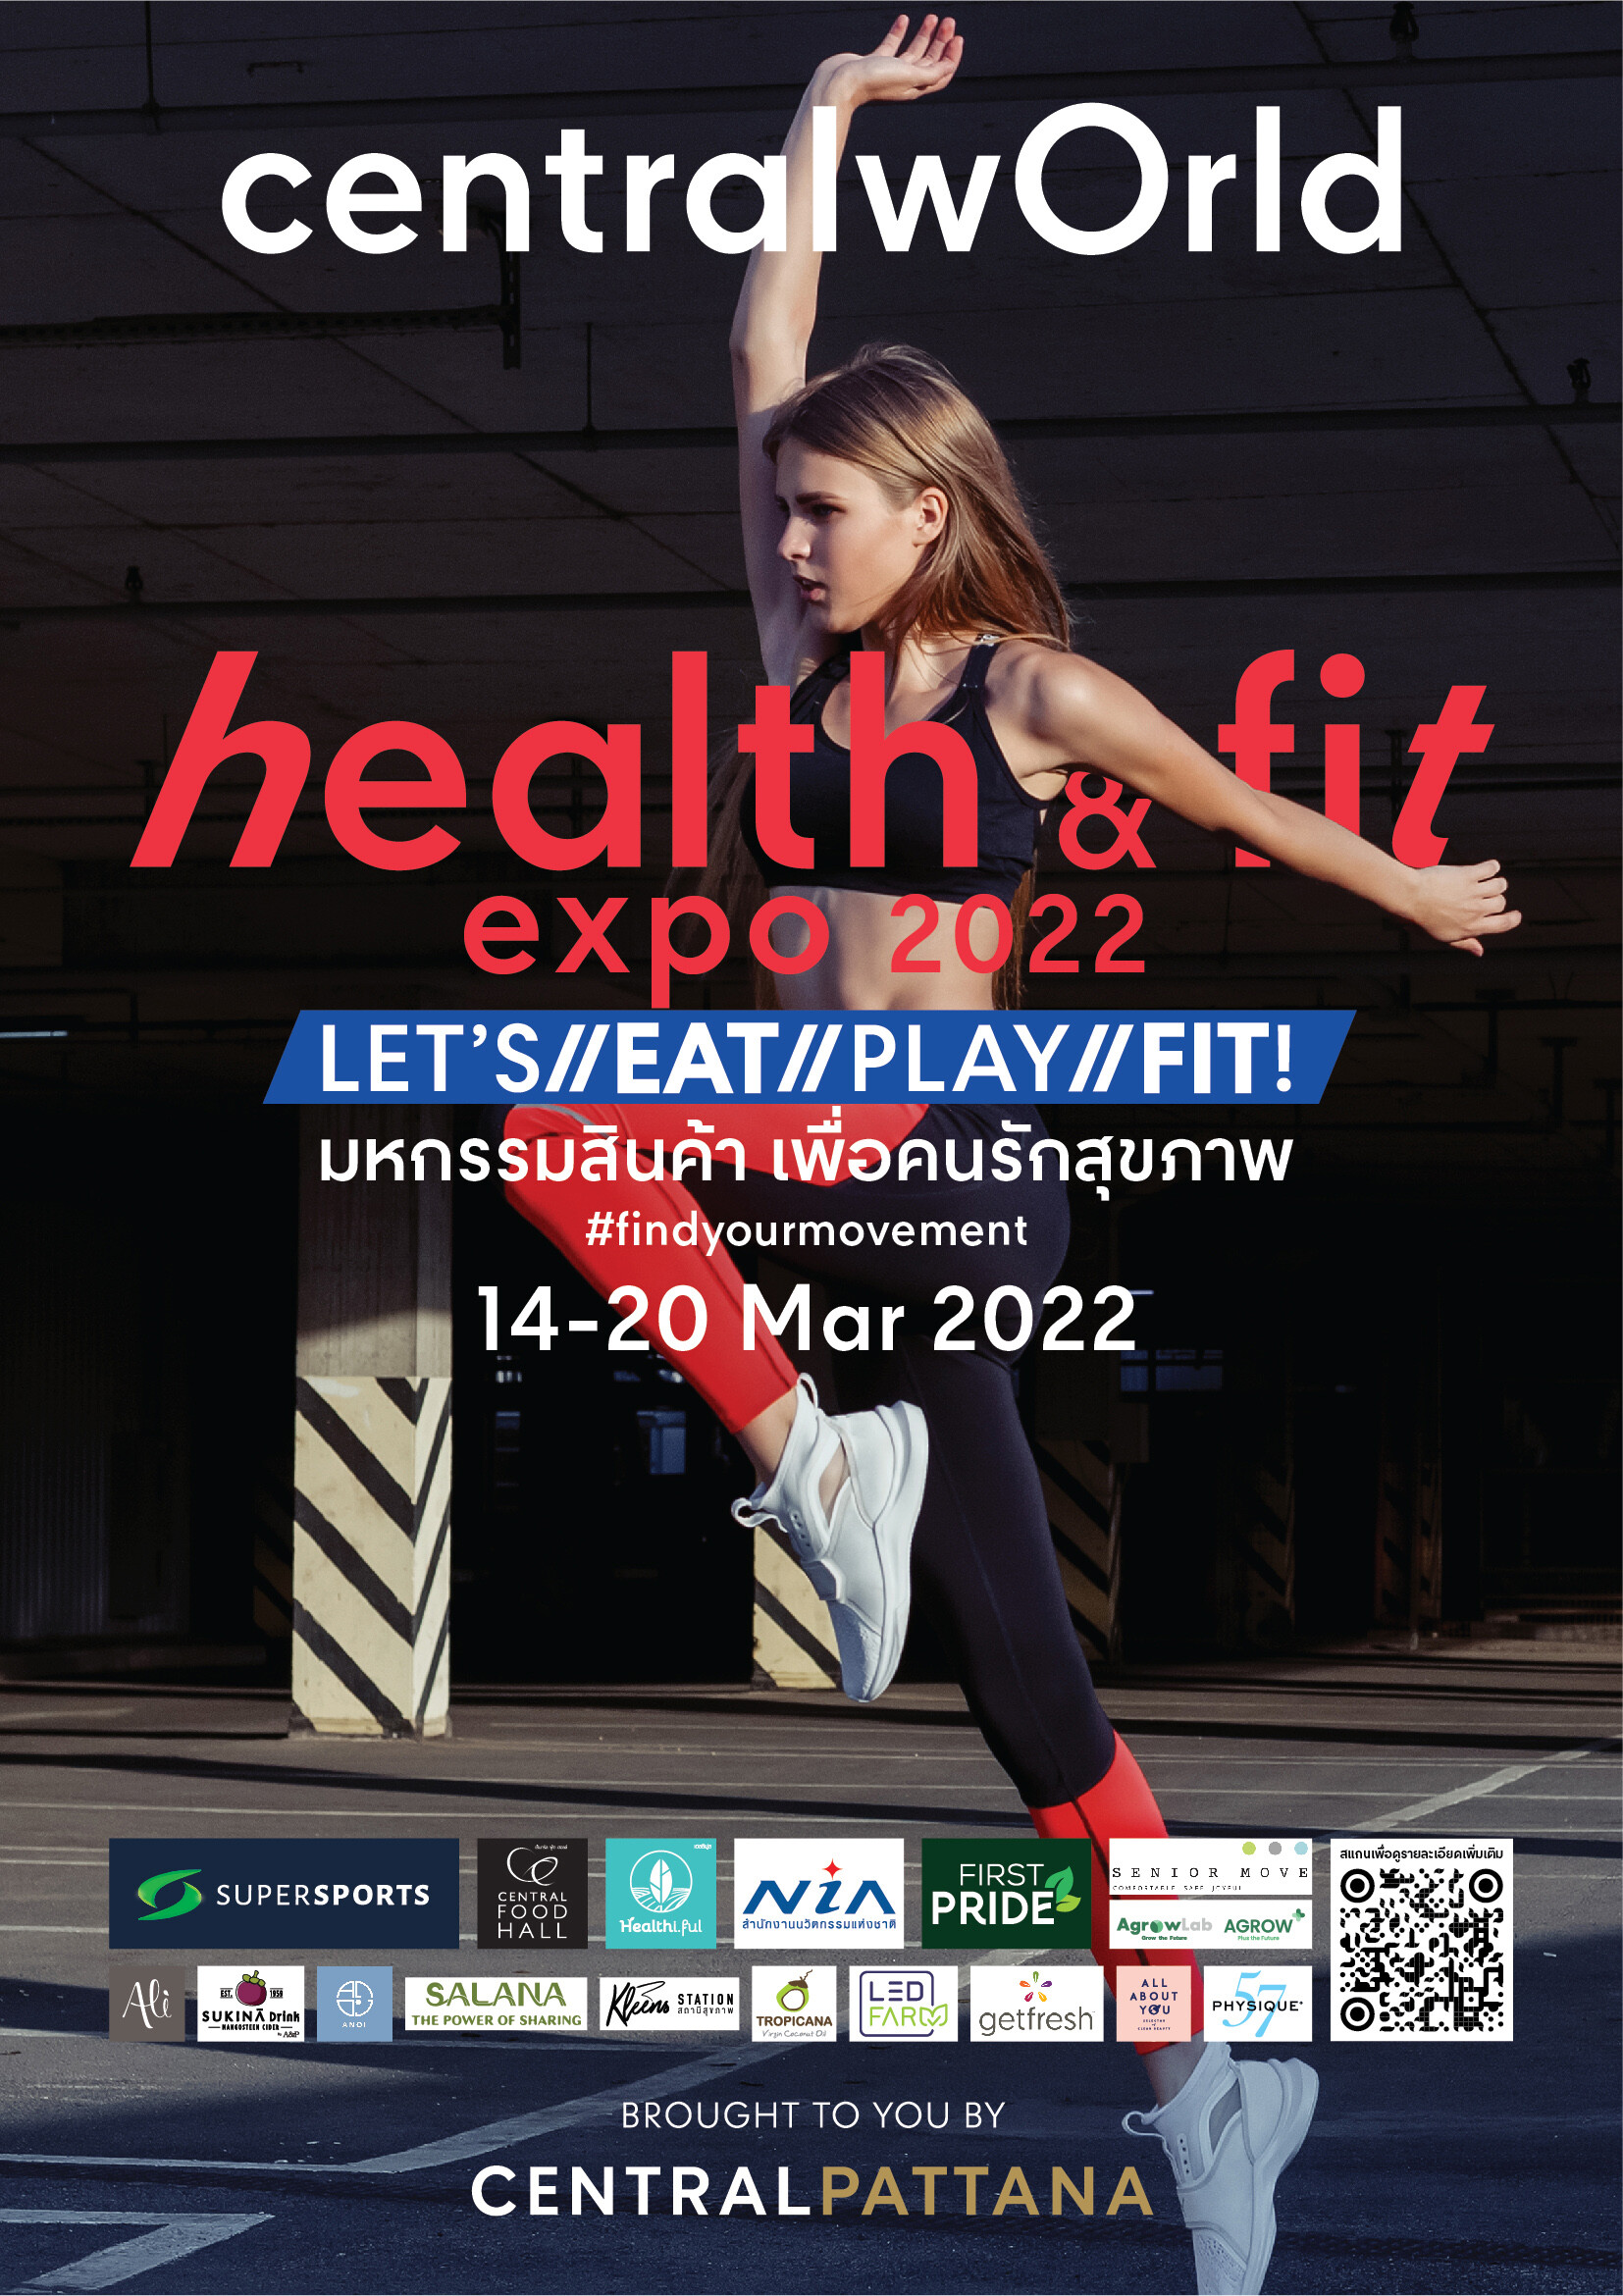 ฟิตกันให้สุด อัพเดทชีวิตสุดเฮลตี้ ในงาน Health & Fit Expo 2022 ที่เดียวตอบทุกไลฟ์สไตล์ Eat Play Fit เริ่มแล้ววันนี้ ถึง 20 มี.ค. 65 ที่เซ็นทรัลเวิลด์